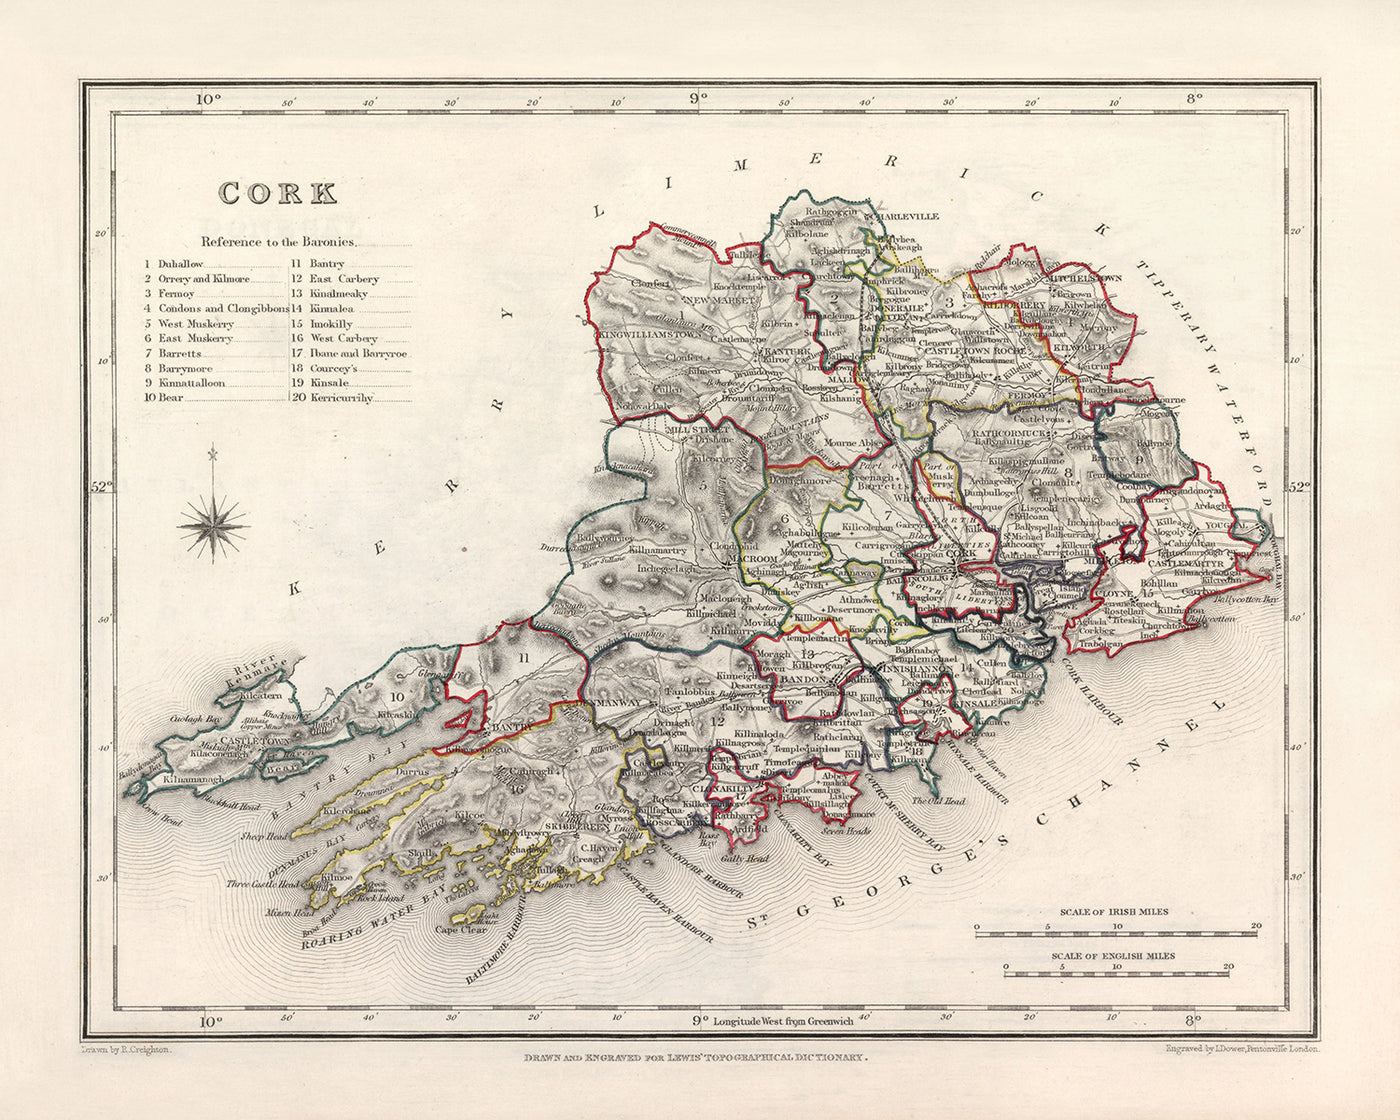 Ancienne carte du comté de Cork par Samuel Lewis, 1844 : Cobh, Kinsale, château de Blarney, Fota House, Mizen Head